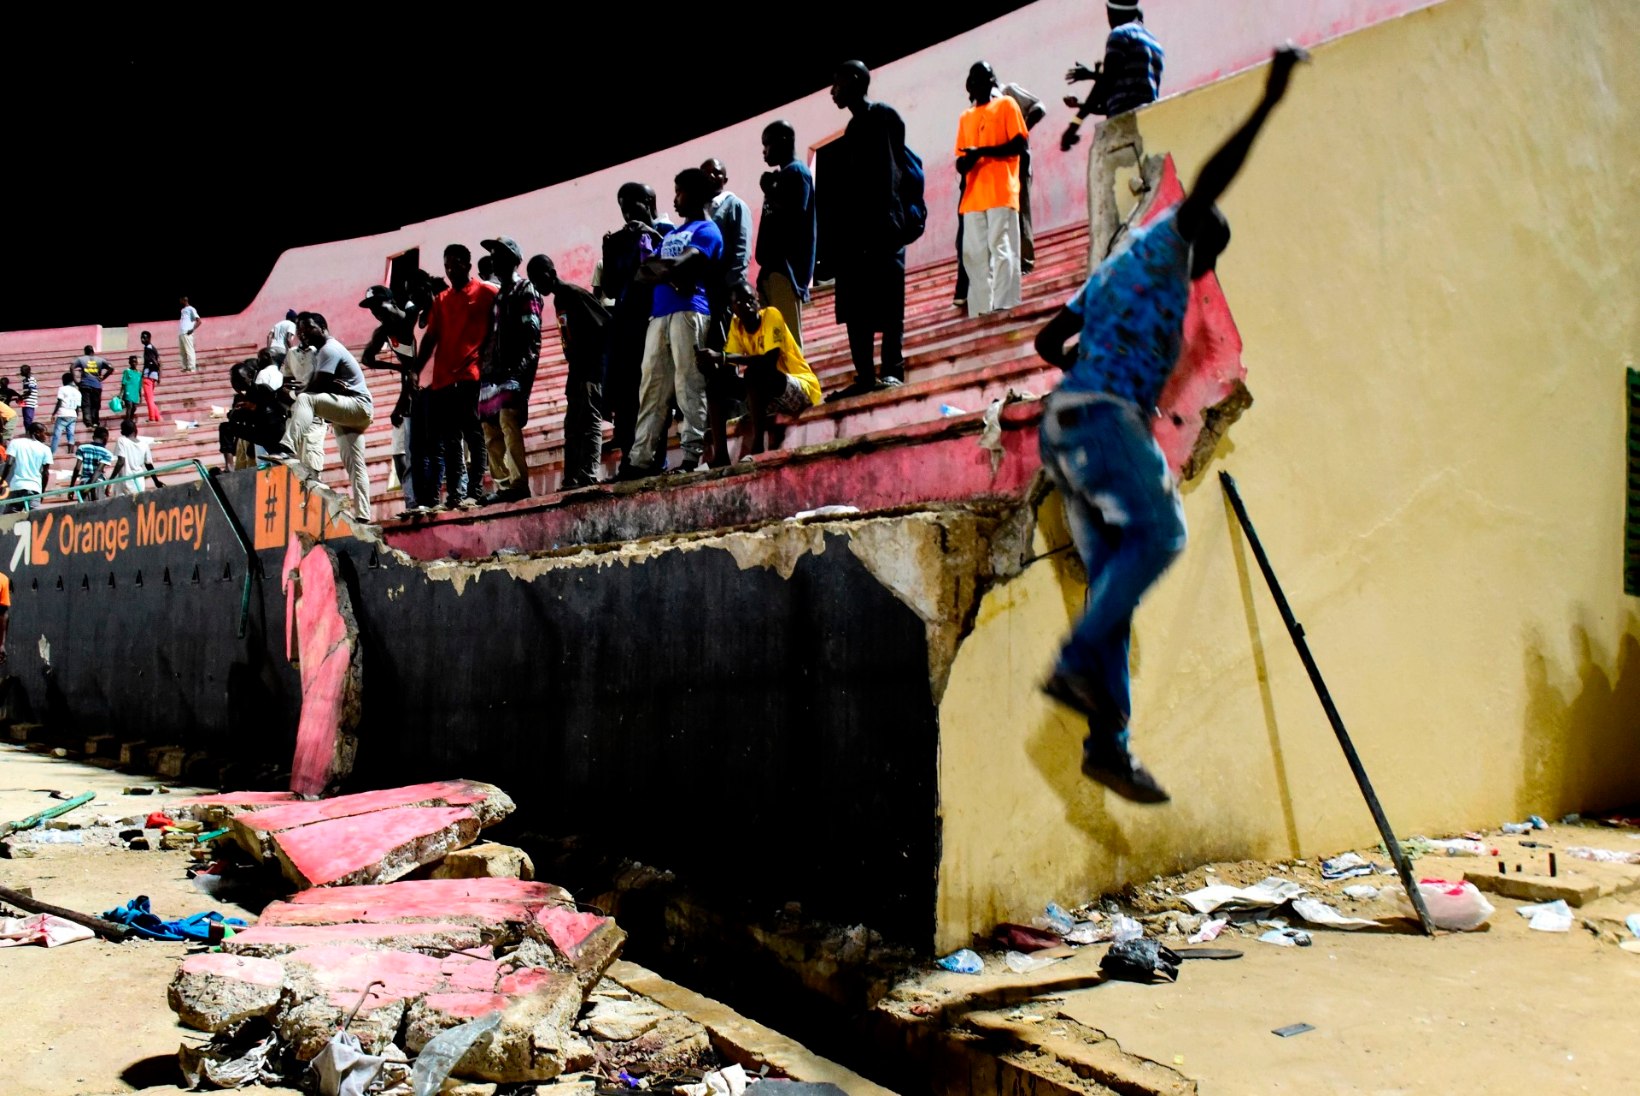 FOTOD | Hullunud Senegali jalgpallifännid põhjustasid traagilise õnnetuse